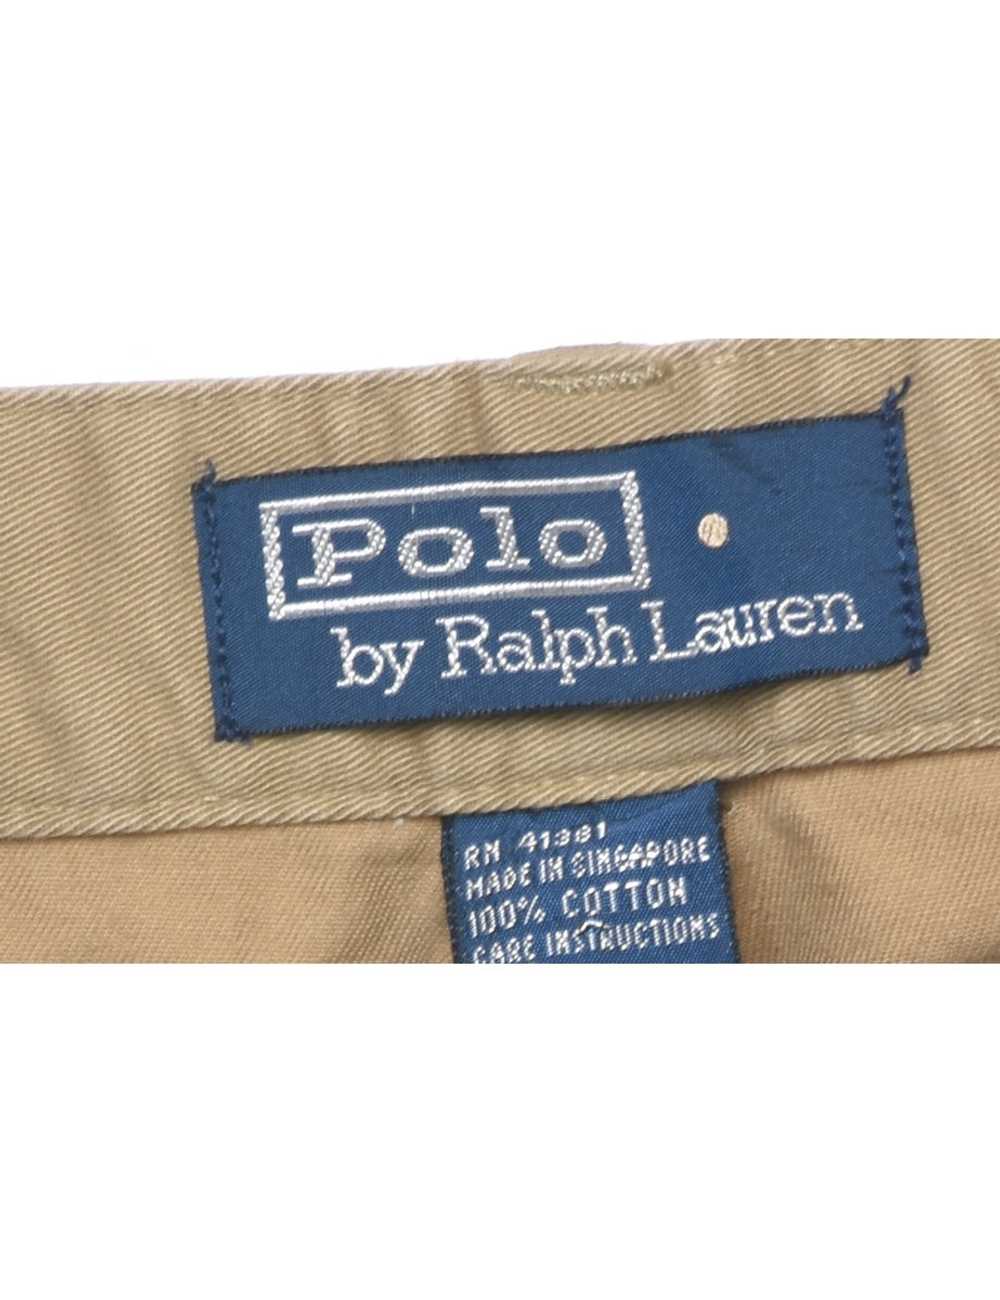 Ralph Lauren Trousers - W34 L32 - image 4